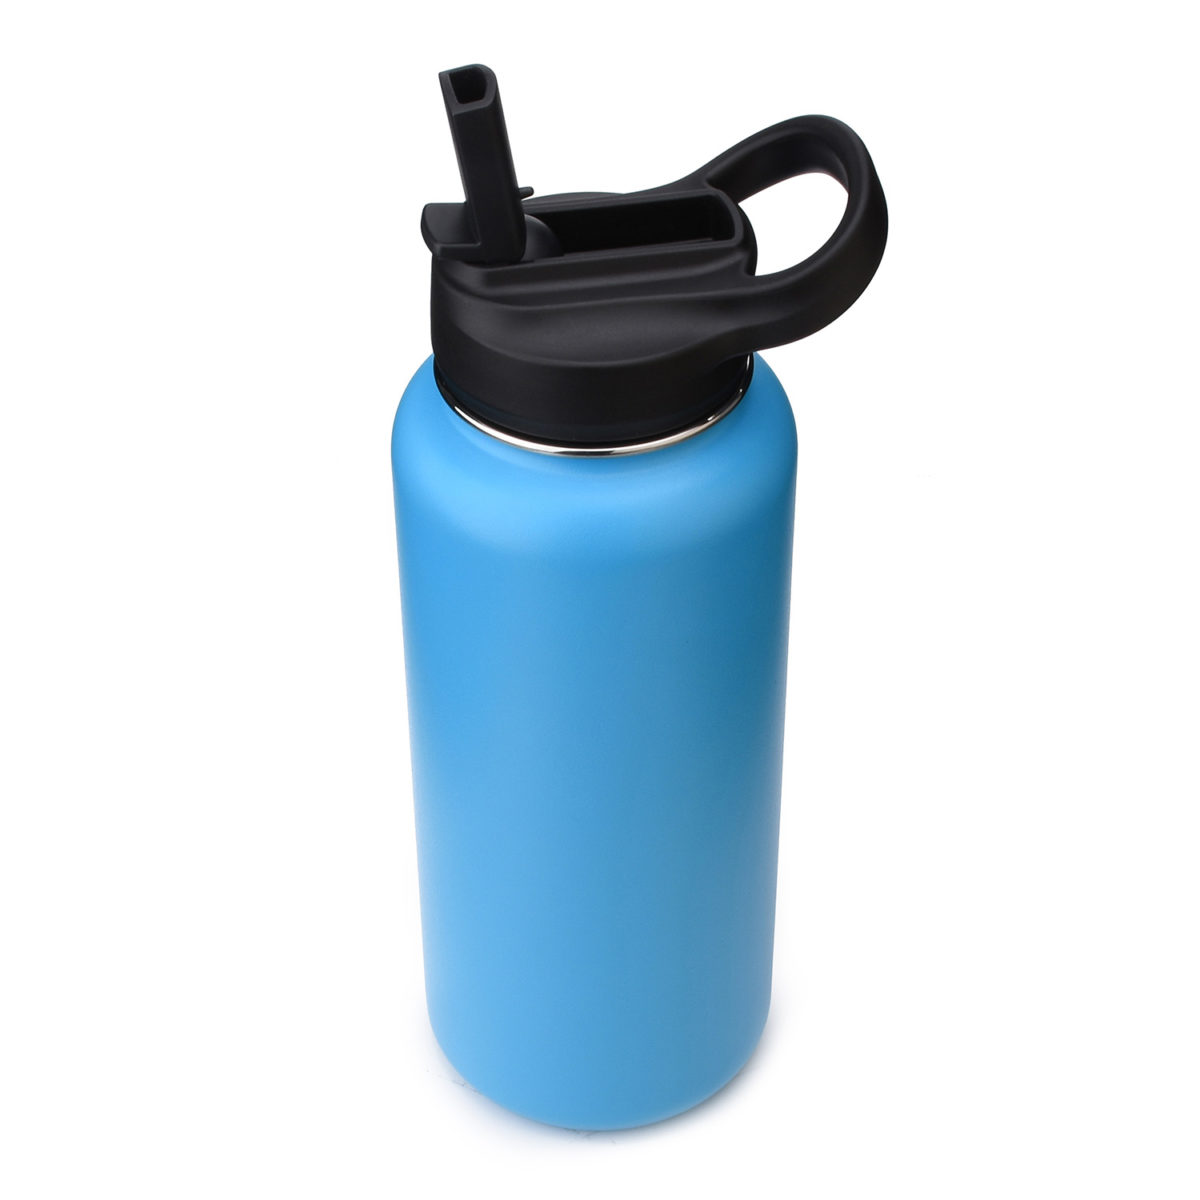 https://www.waterbottle.tech/wp-content/uploads/2020/08/wide-mouth-water-bottle-with-straw-lid-cap-s113292-2-1200x1200.jpg